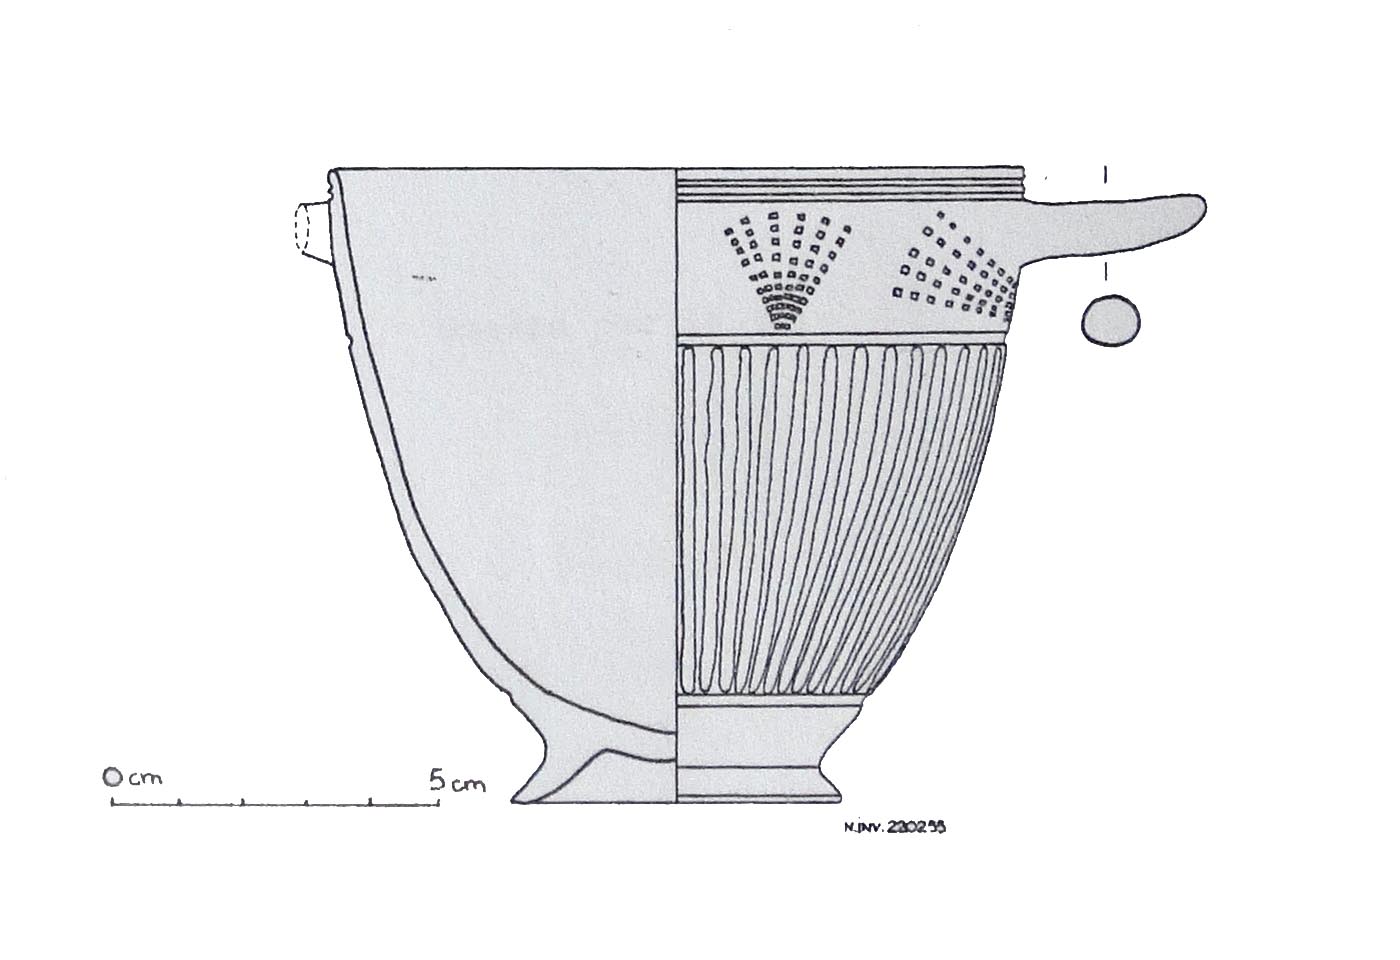 kotyle, Rasmussen c - ambito etrusco meridionale (ultimo quarto sec. VII a.C)